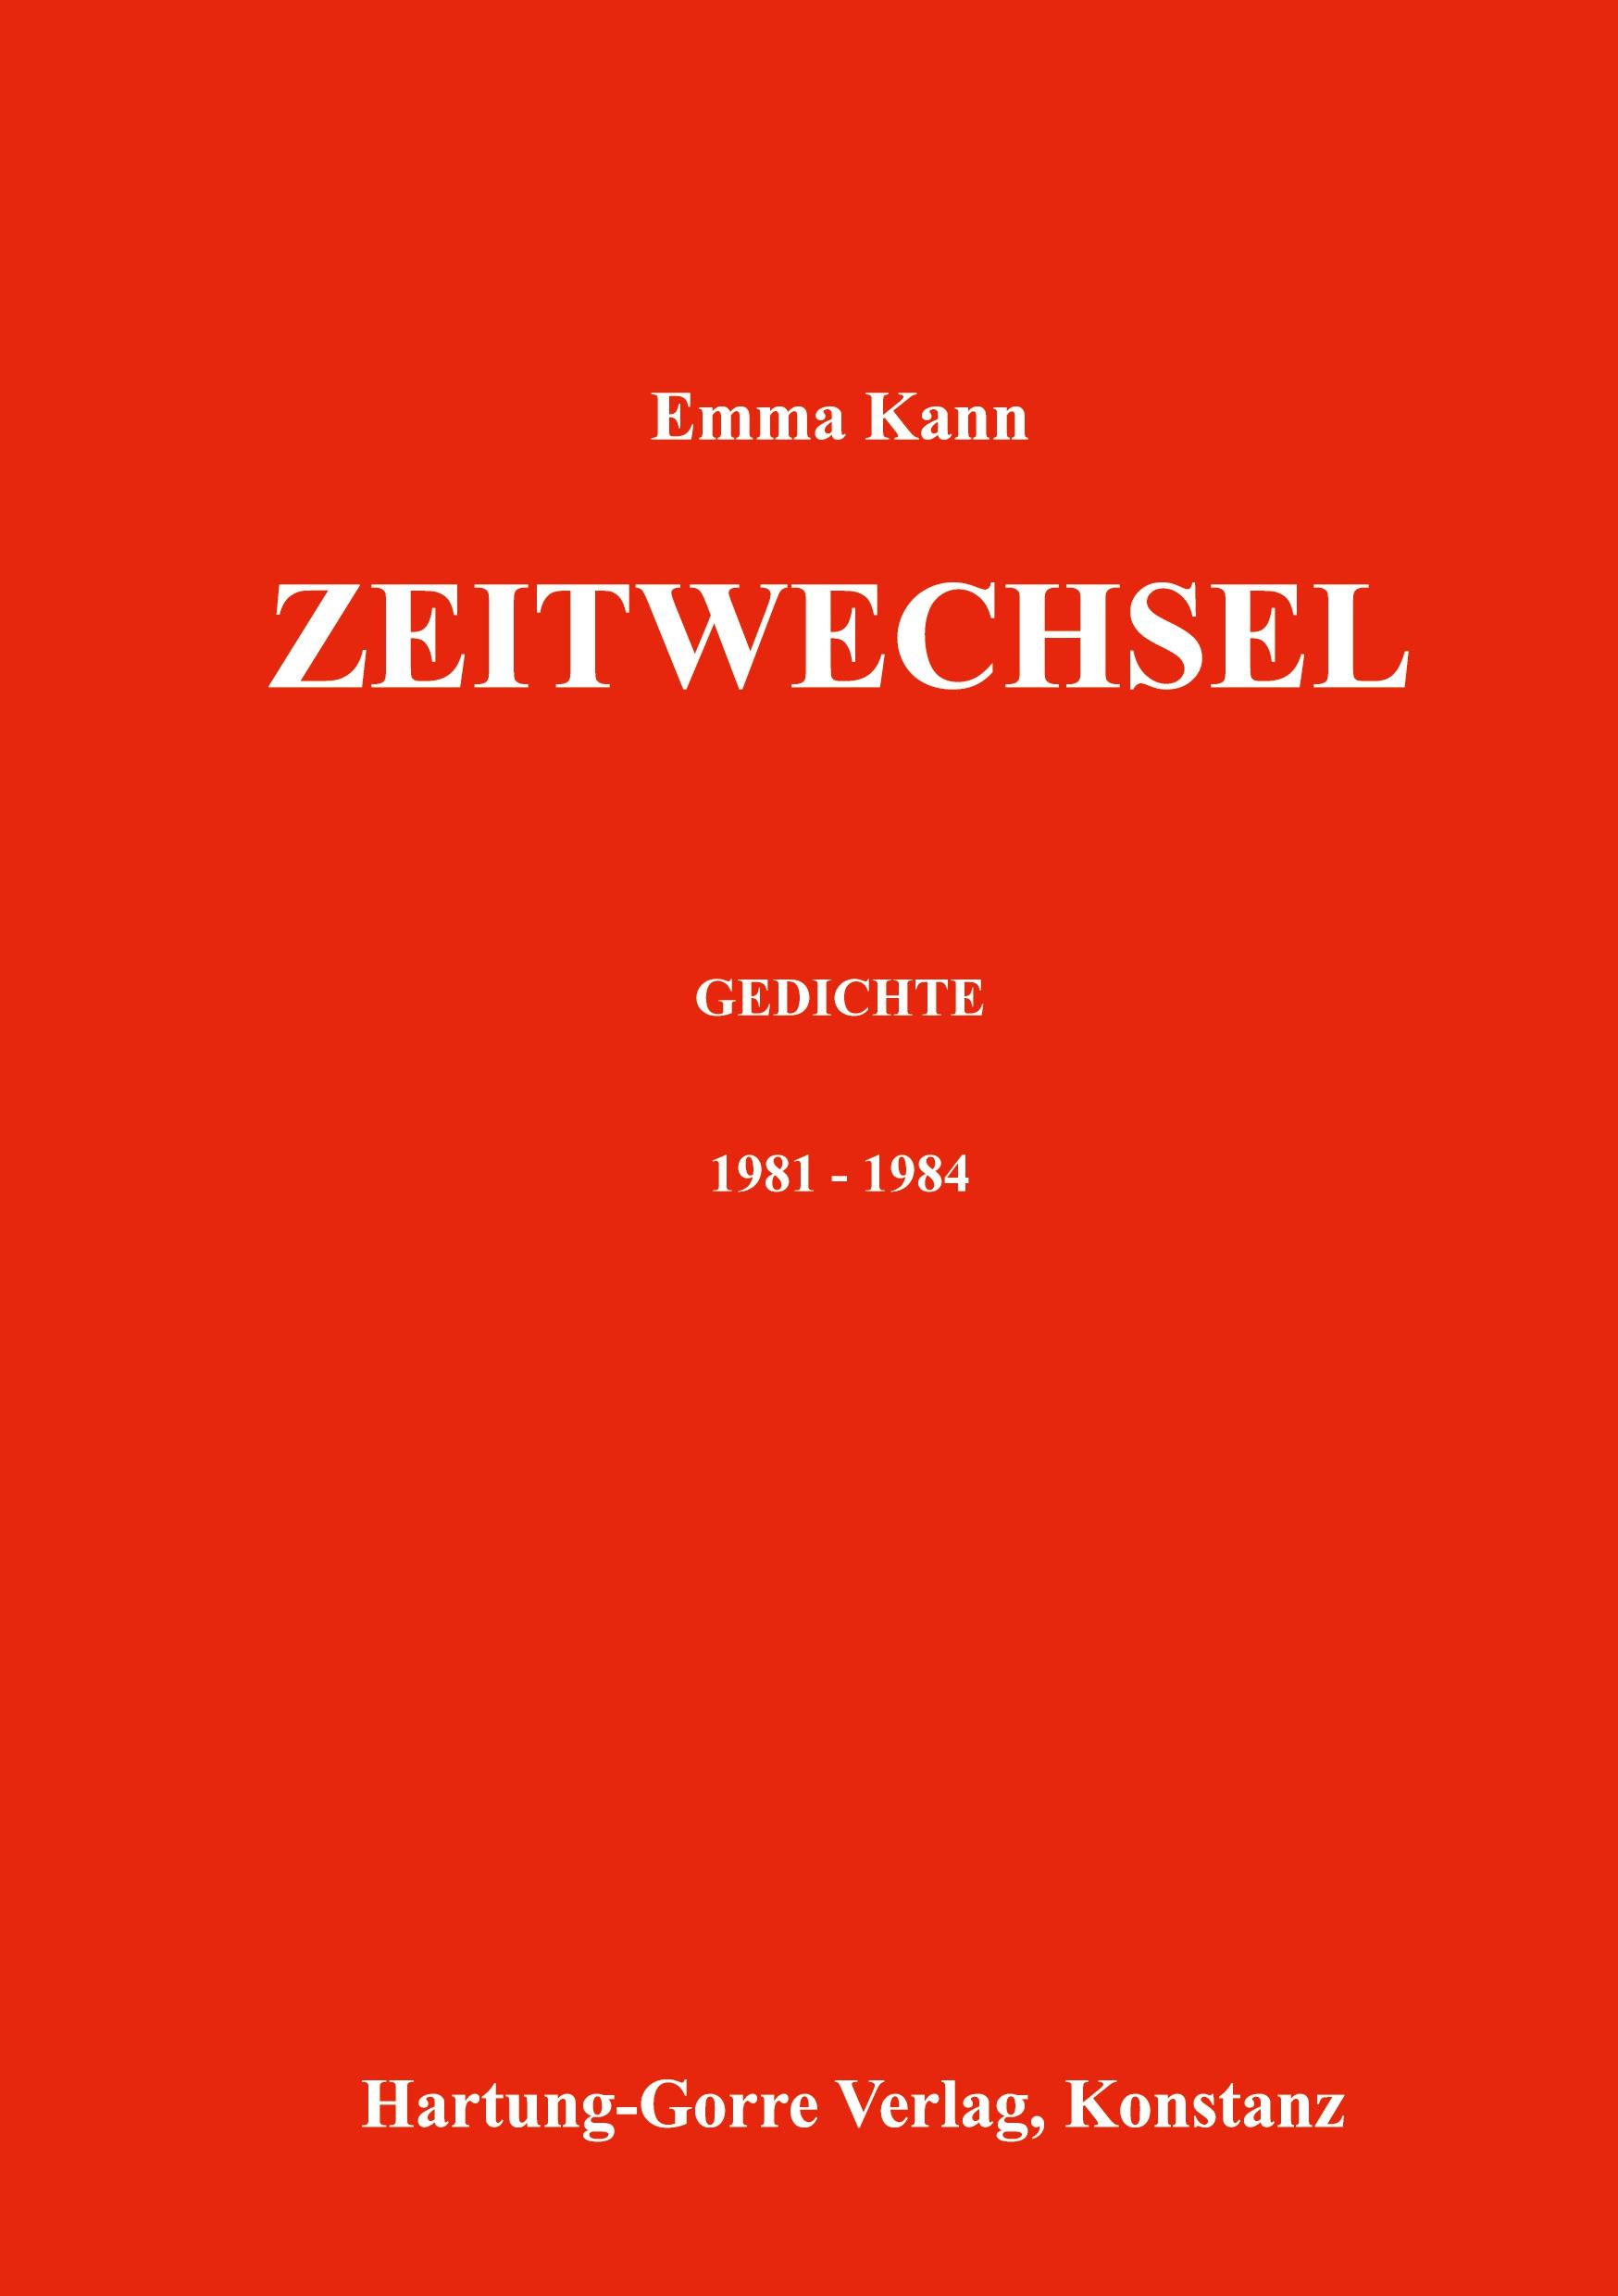 Zeitwechsel: Gedichte 1981-1985